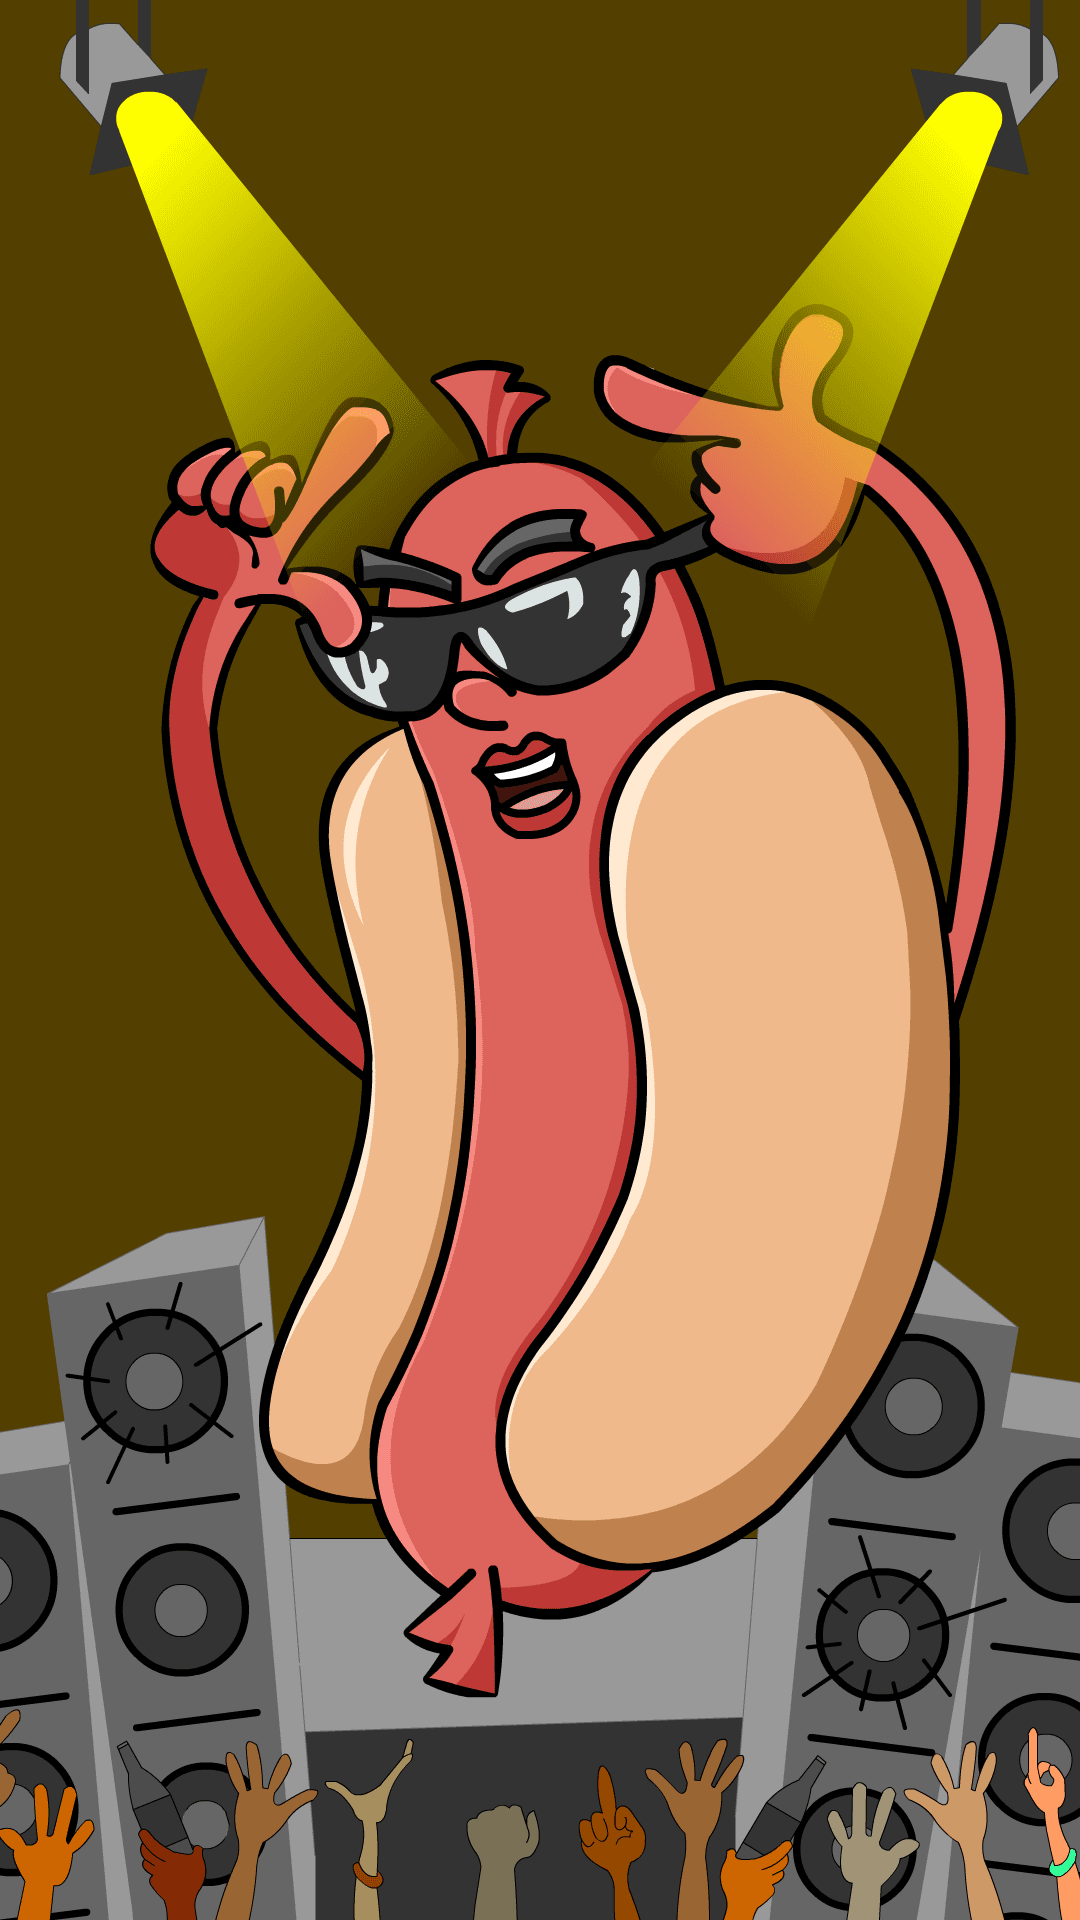 YoToonz #24: Hot Dog Top Dog